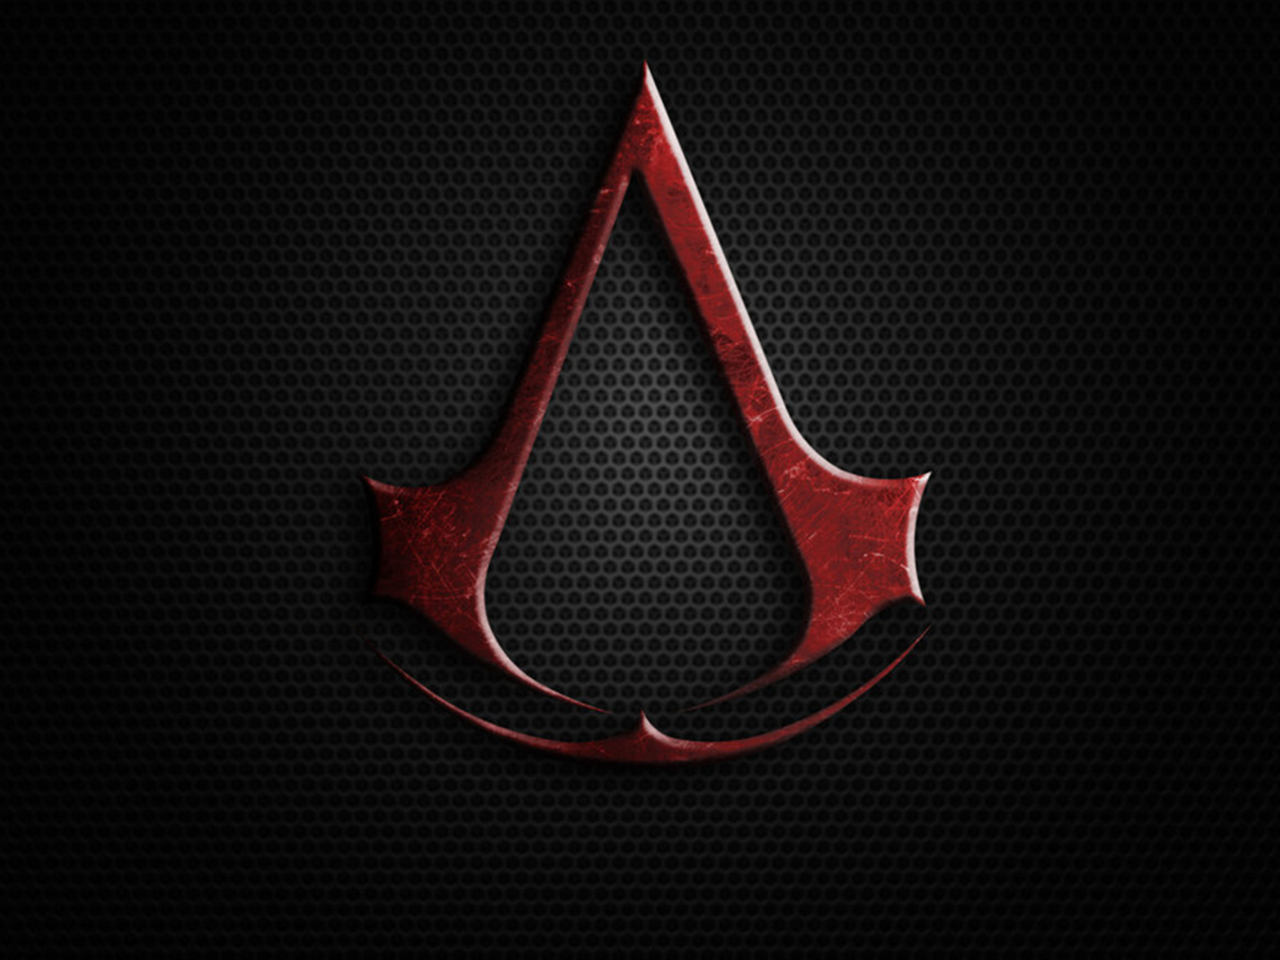 Das Assassins Creed Wallpaper 1280x960